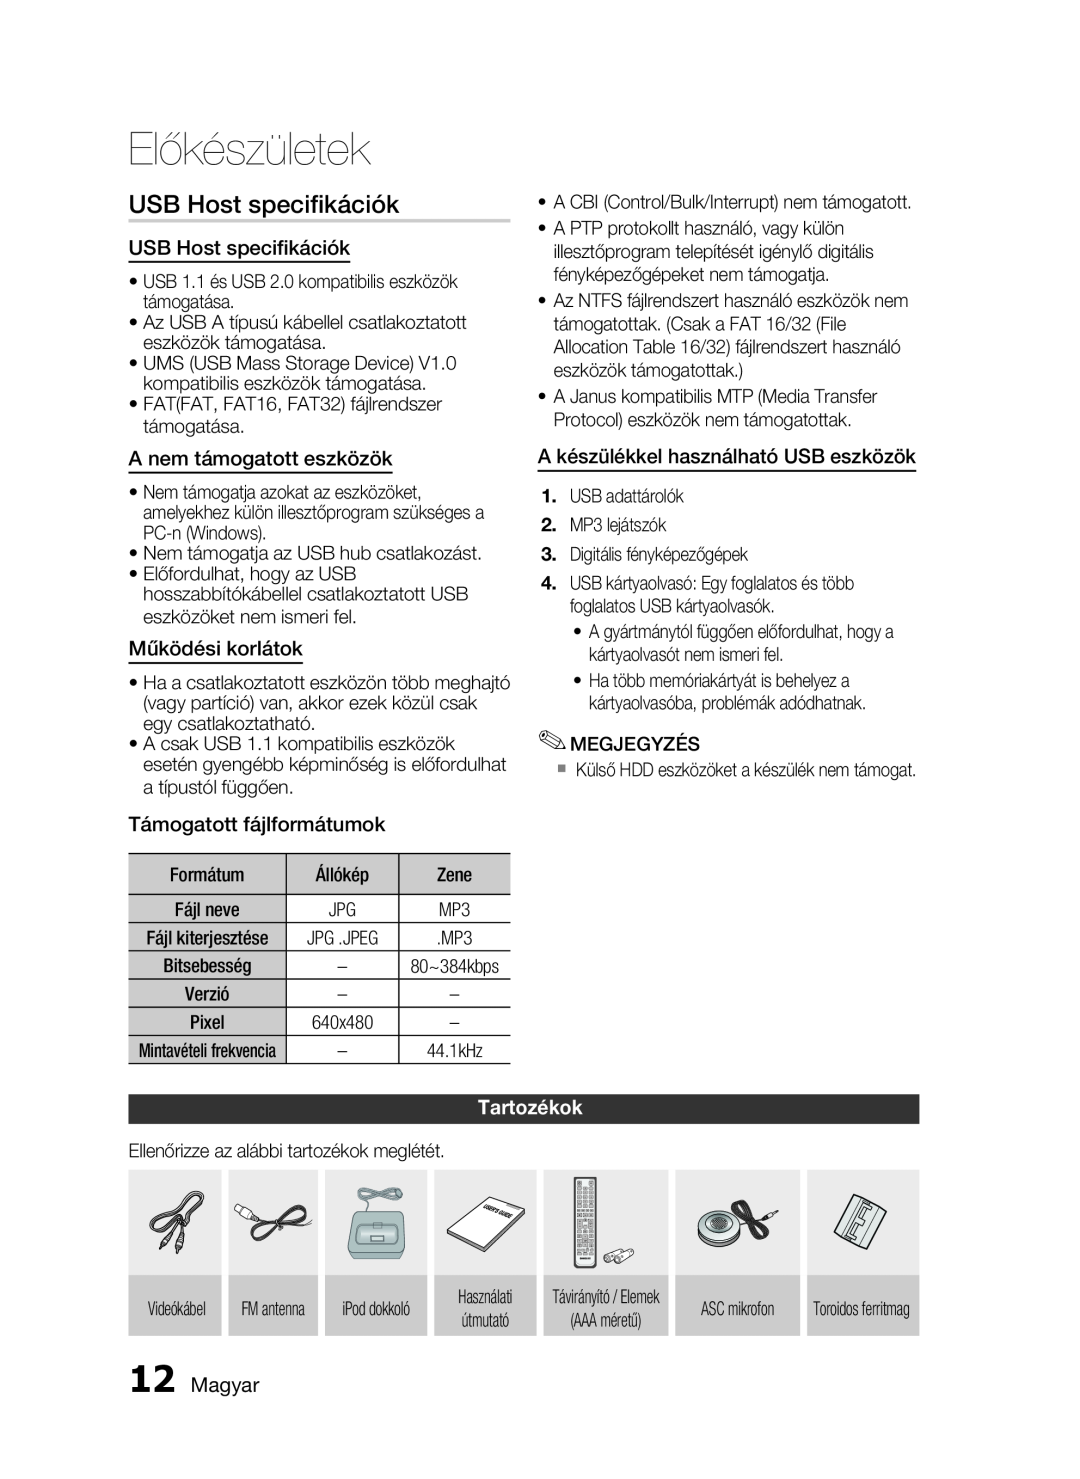 Samsung HT-C5900/XEF USB Host speciﬁkációk, USB Host specifikációk, A nem támogatott eszközök, Működési korlátok, Magyar 